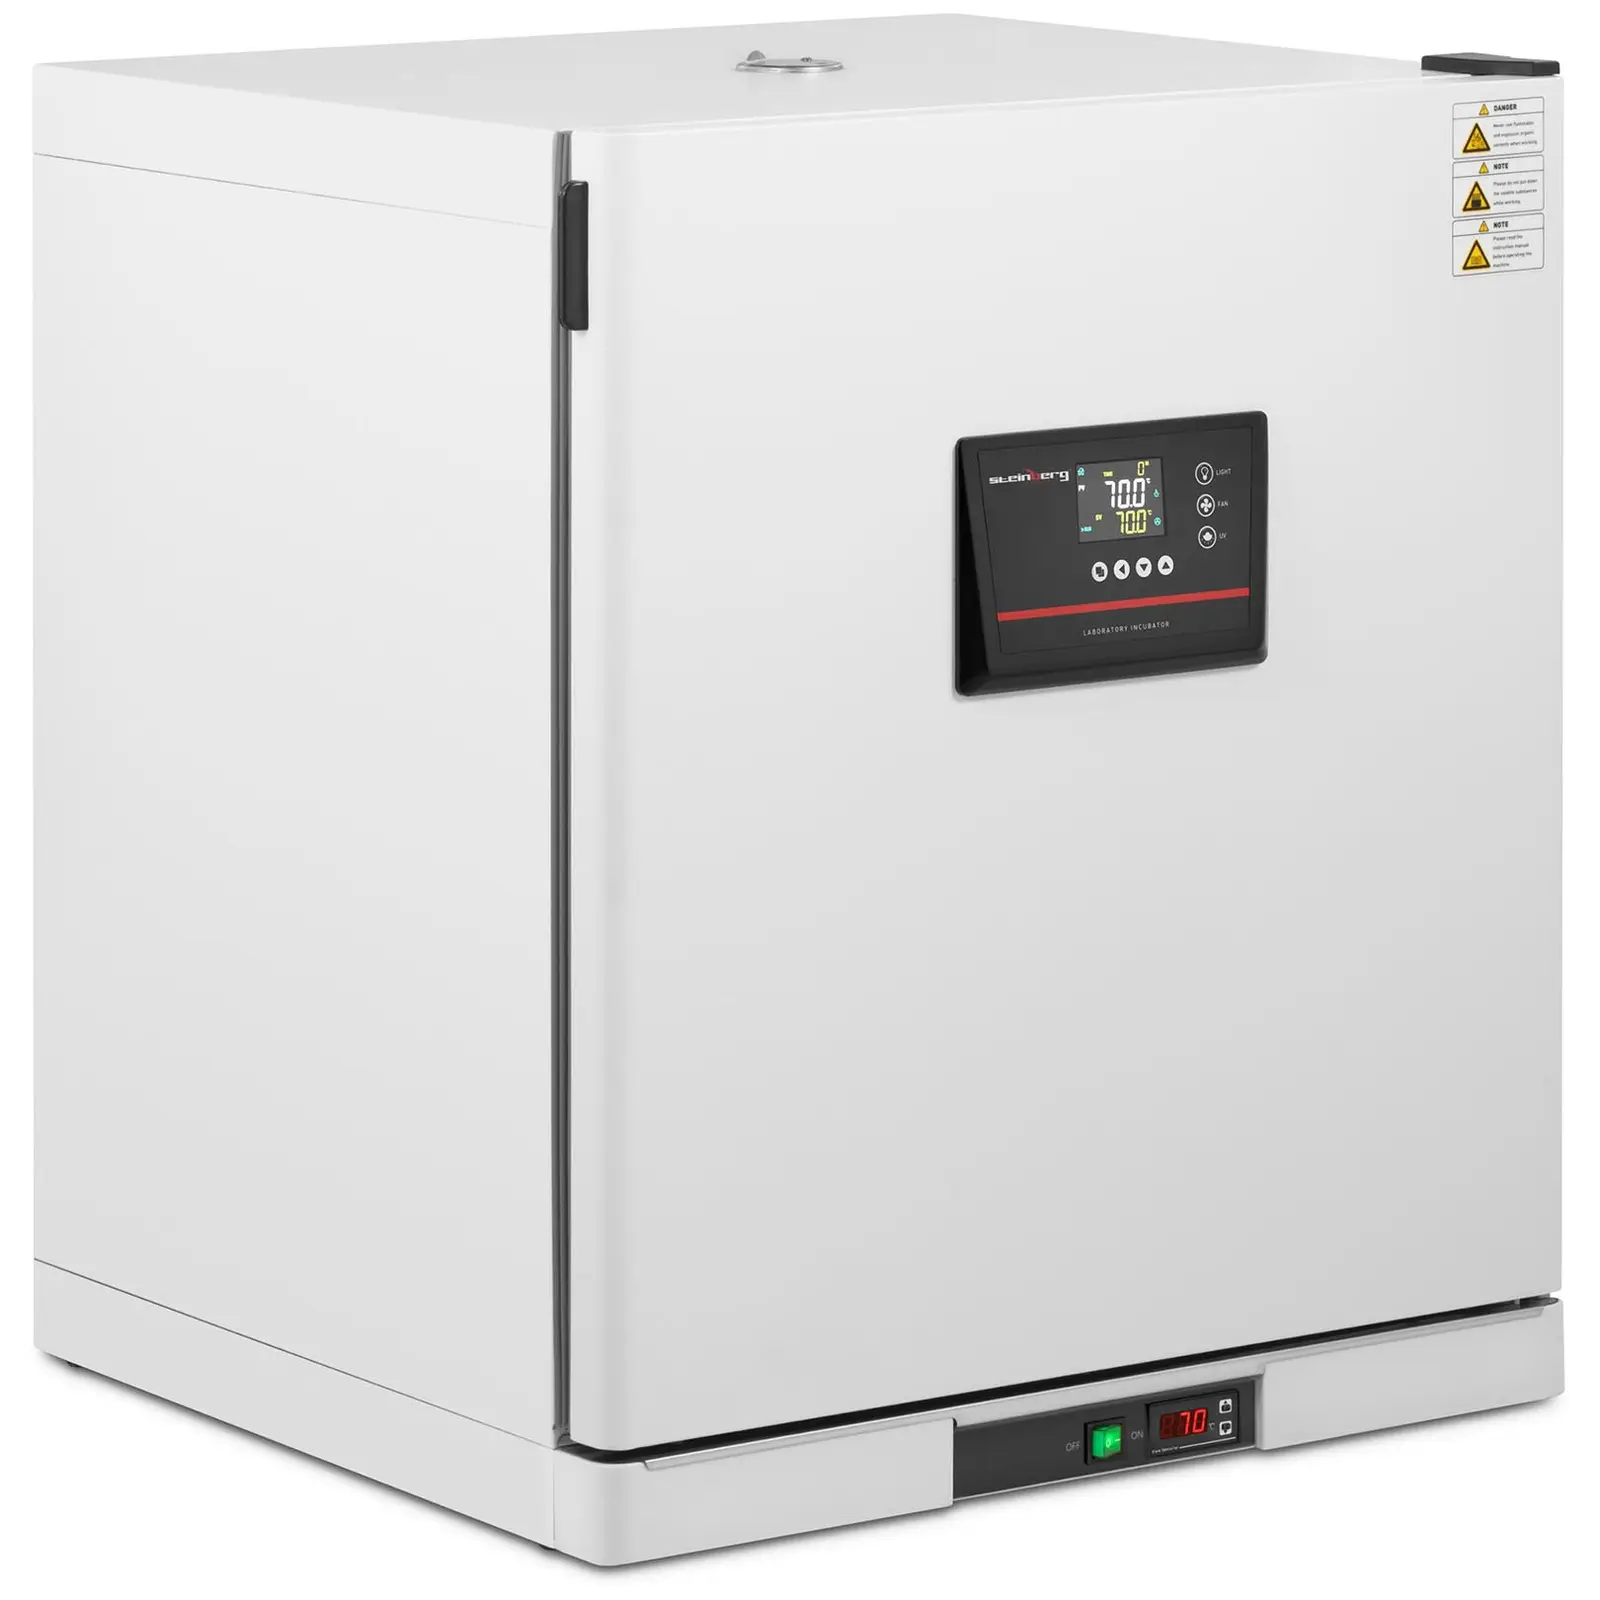 Incubadora de laboratório - até 70°C - 210 l - circulação circulação forçada de ar